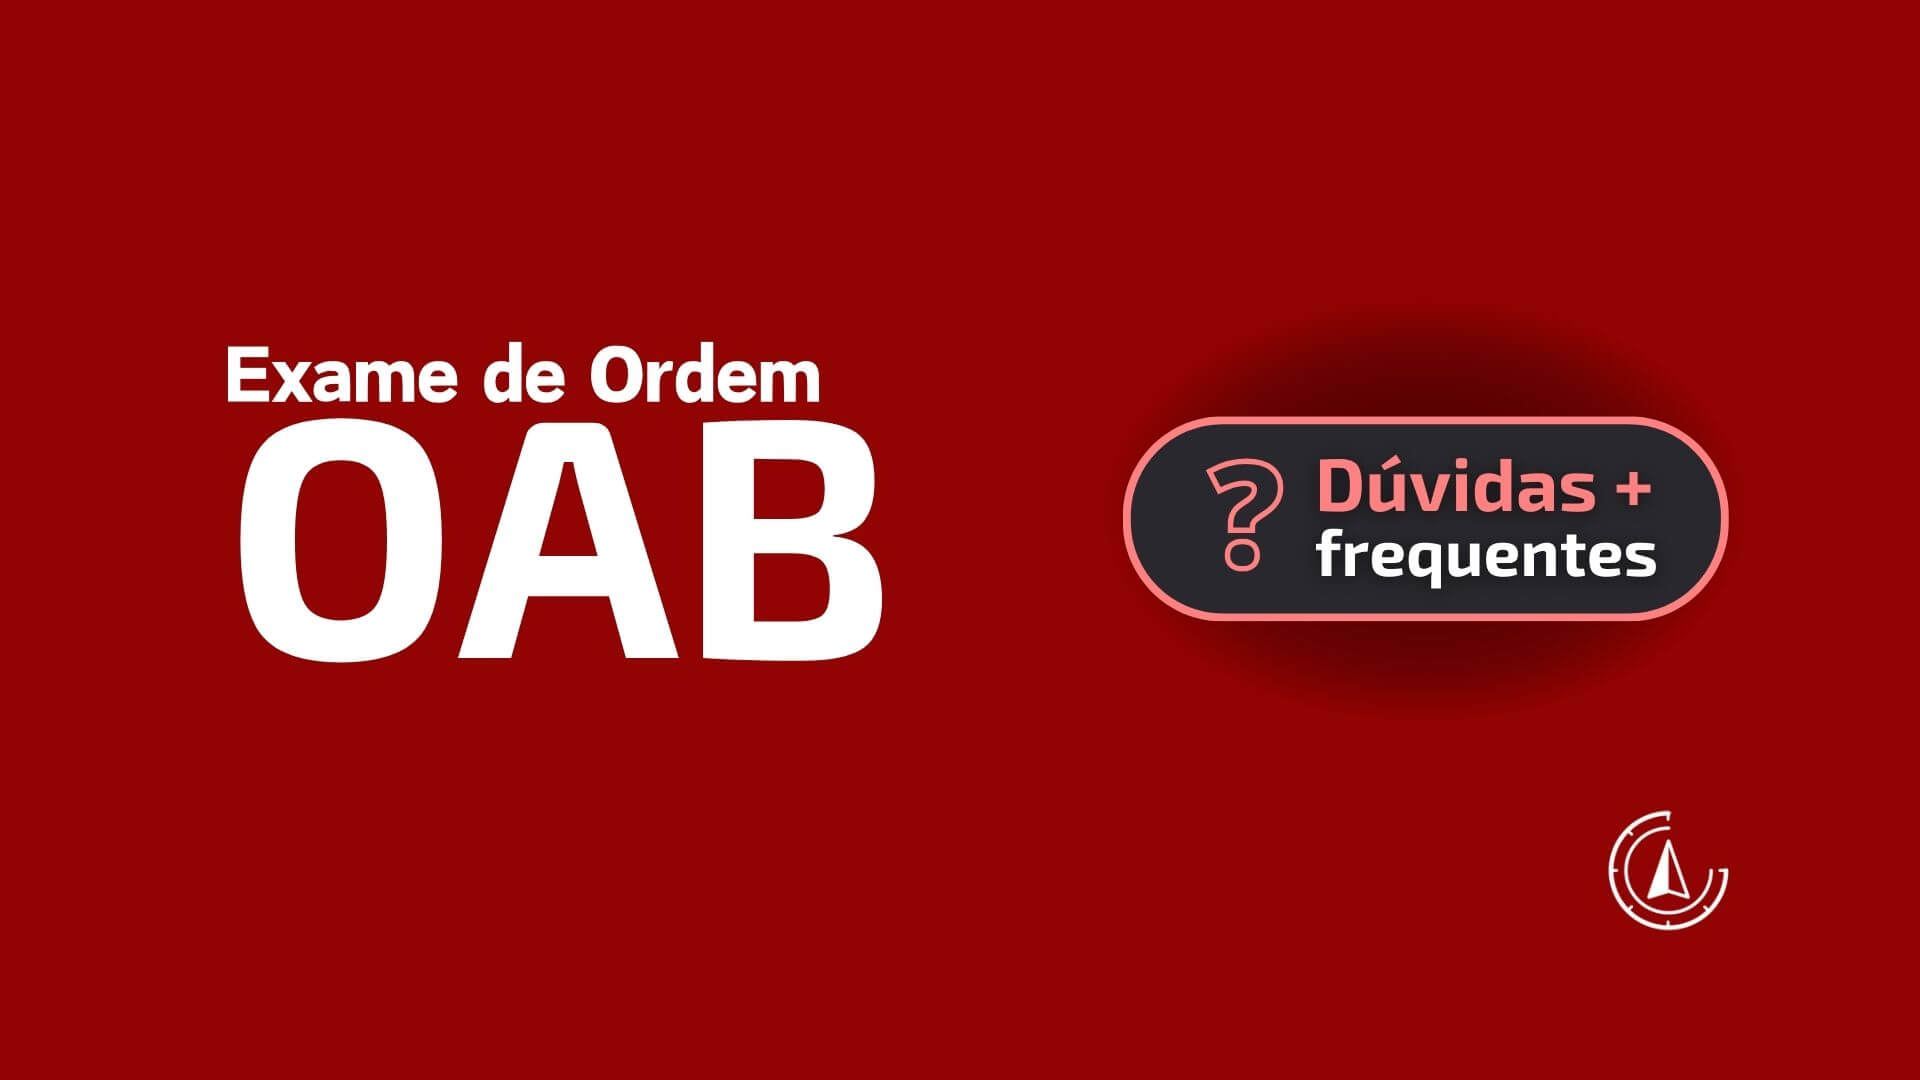 OAB: Tudo sobre o Exame de Ordem dos Advogados do Brasil.